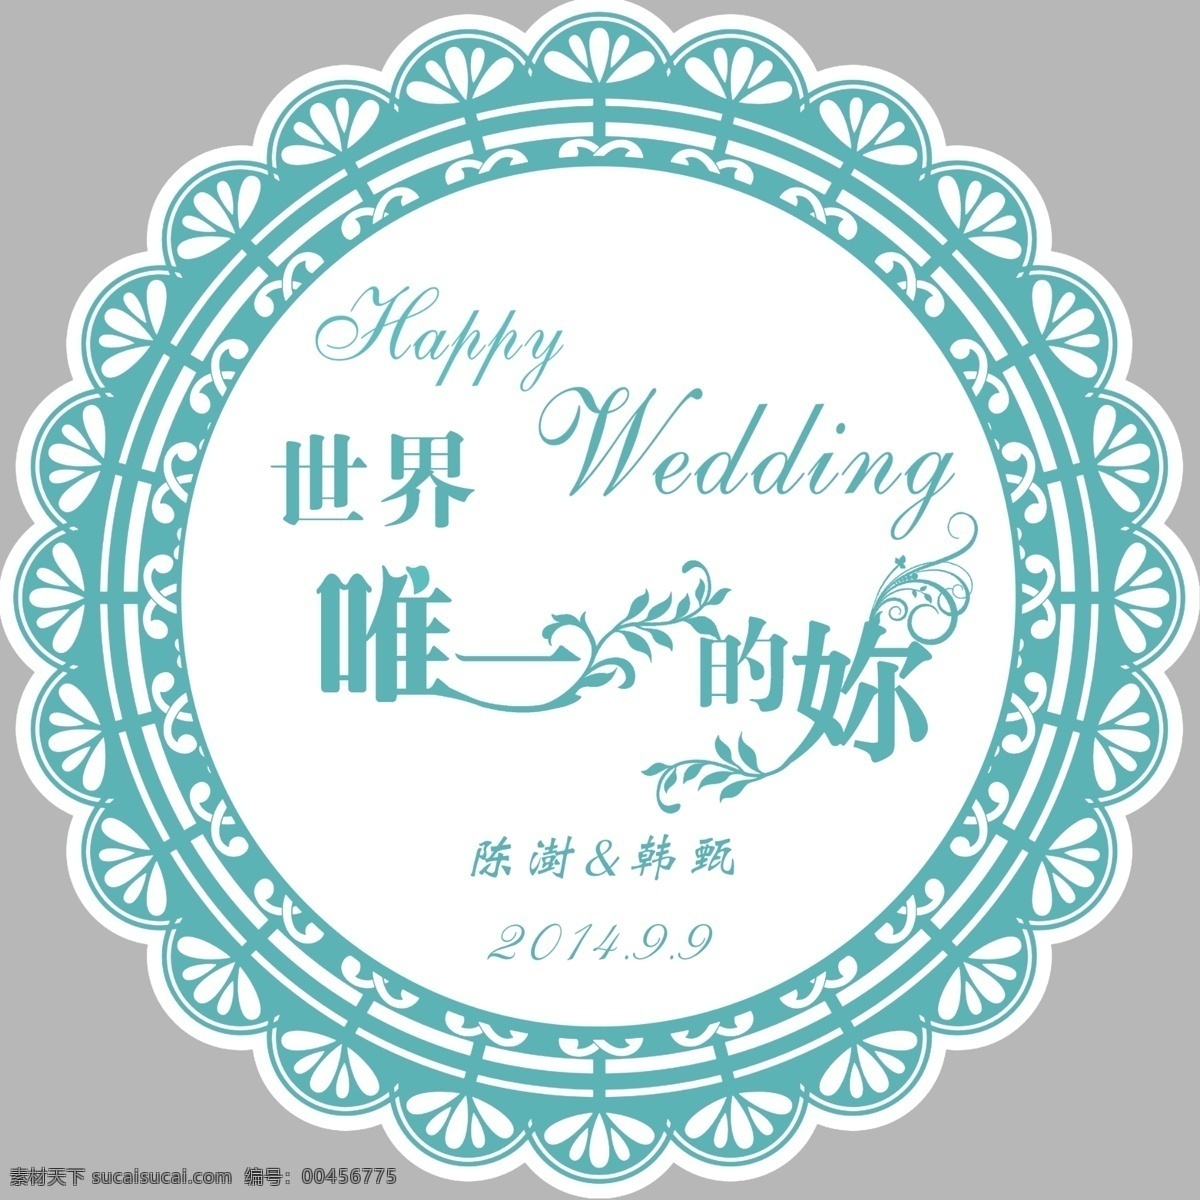 蒂 芙 尼 蓝 婚礼 logo psd分层 蒂芙尼蓝 婚礼logo 世界唯一的你 psd源文件 logo设计